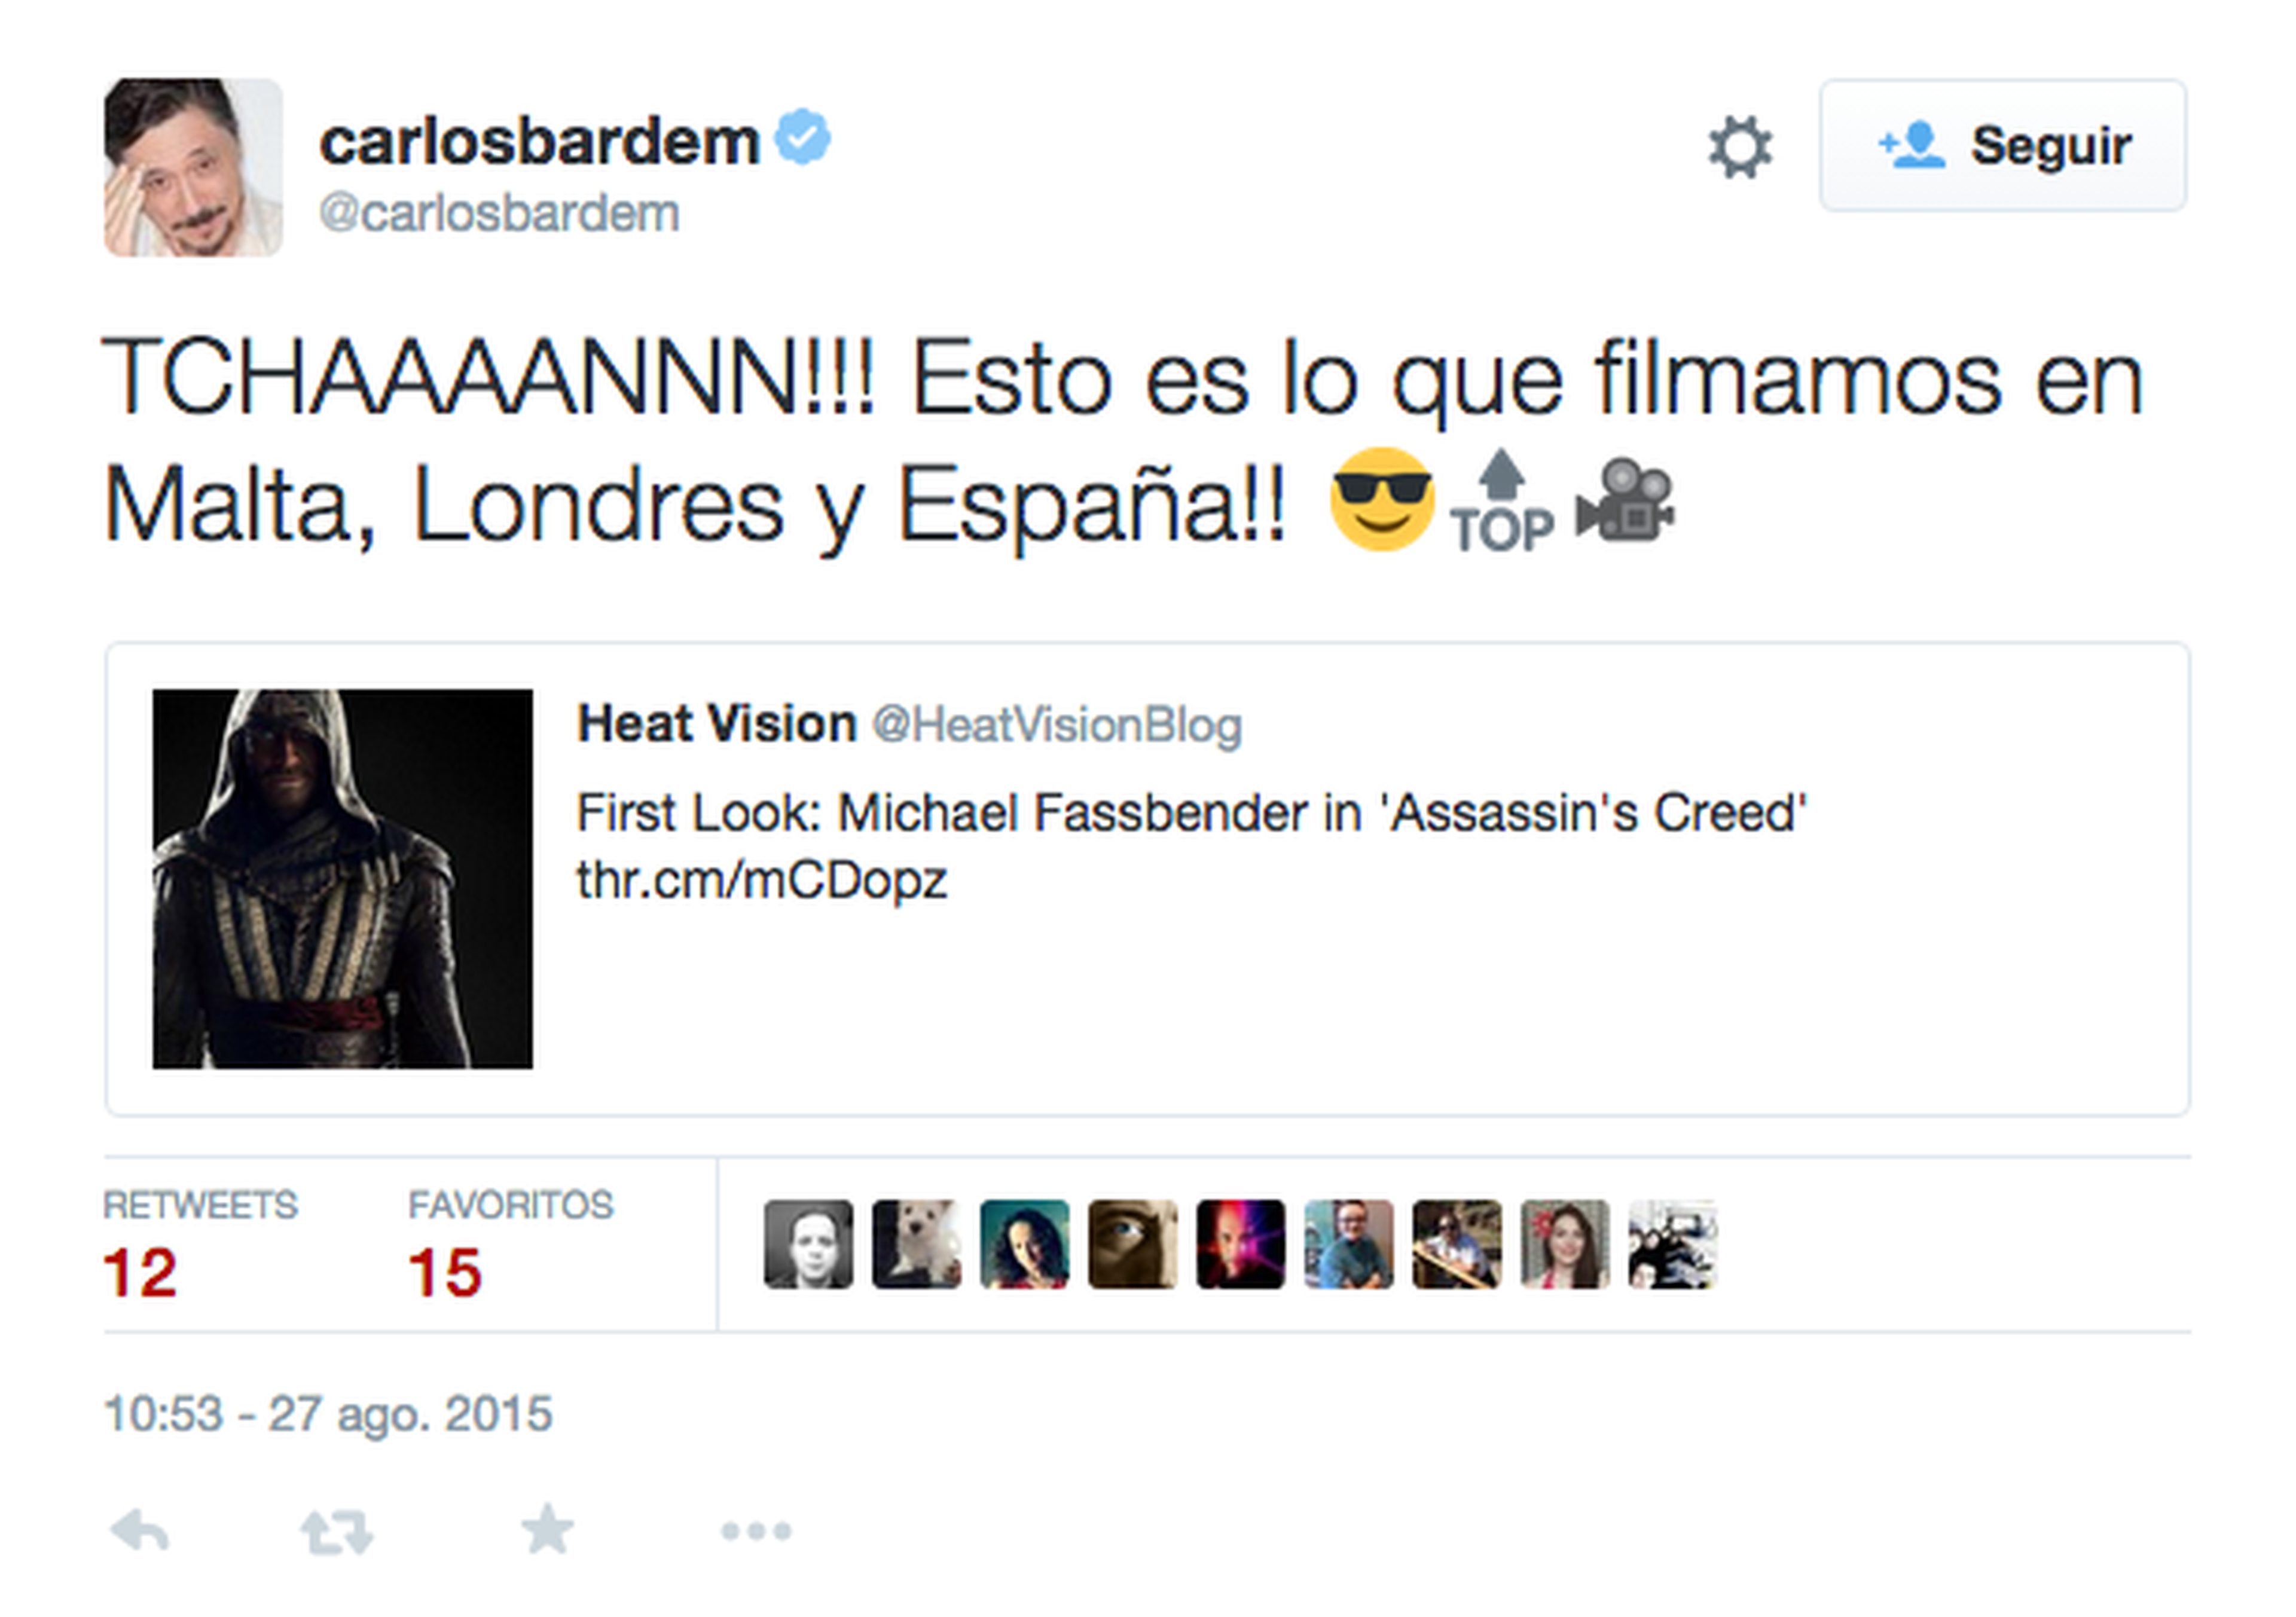 La película Assassin's Creed contará con Carlos Bardem en el reparto